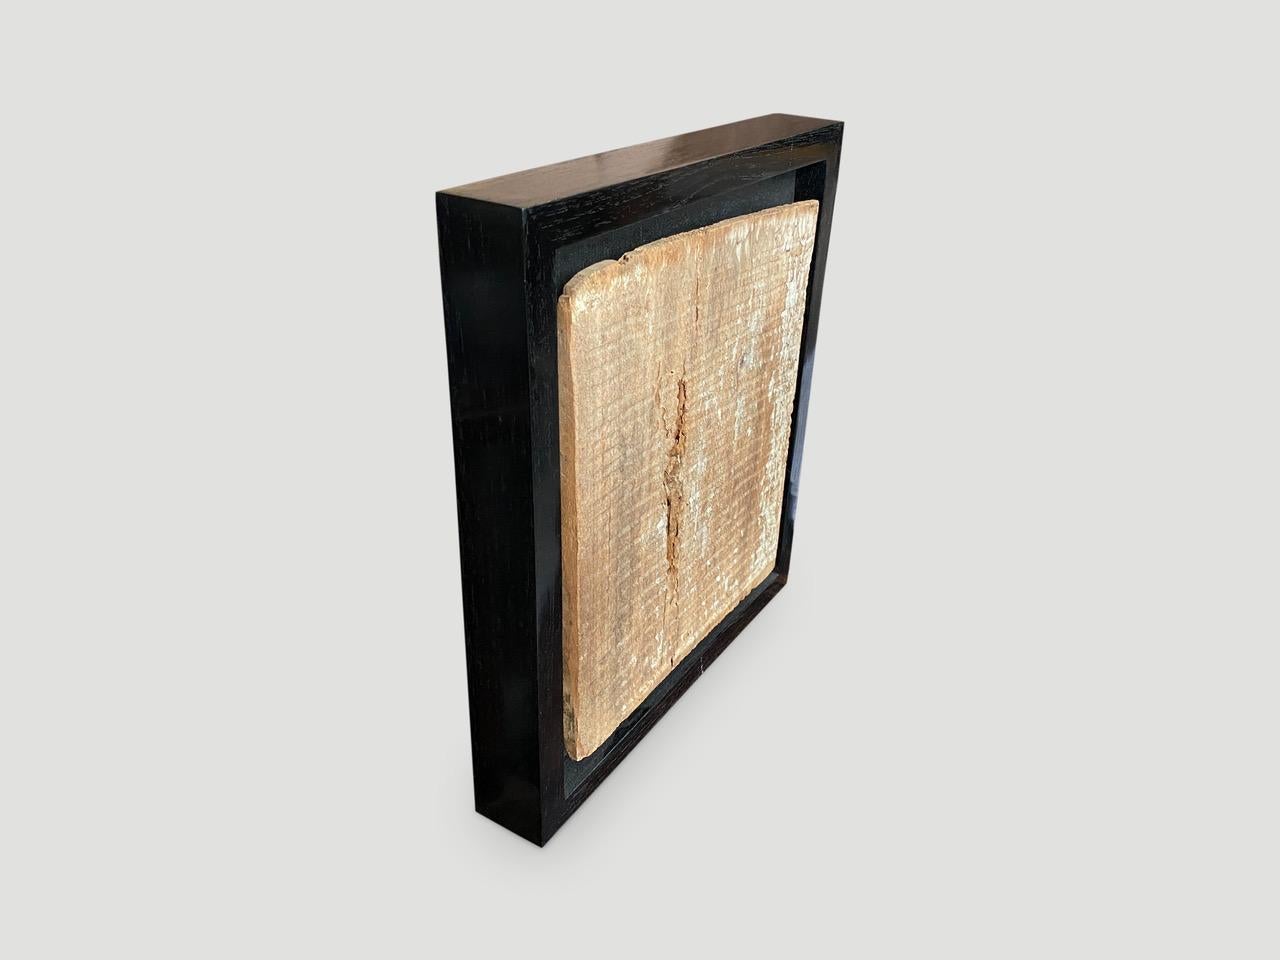 Antike handgeschnitzte Architekturtafel aus dem Toraja-Land. Diese Schnitzerei symbolisiert den Schutz des Hauses. Ursprünglich als Außenverkleidung verwendet. Gerahmt in einer minimalistischen Schattenbox aus schwarzem Teakholz. Großartiges